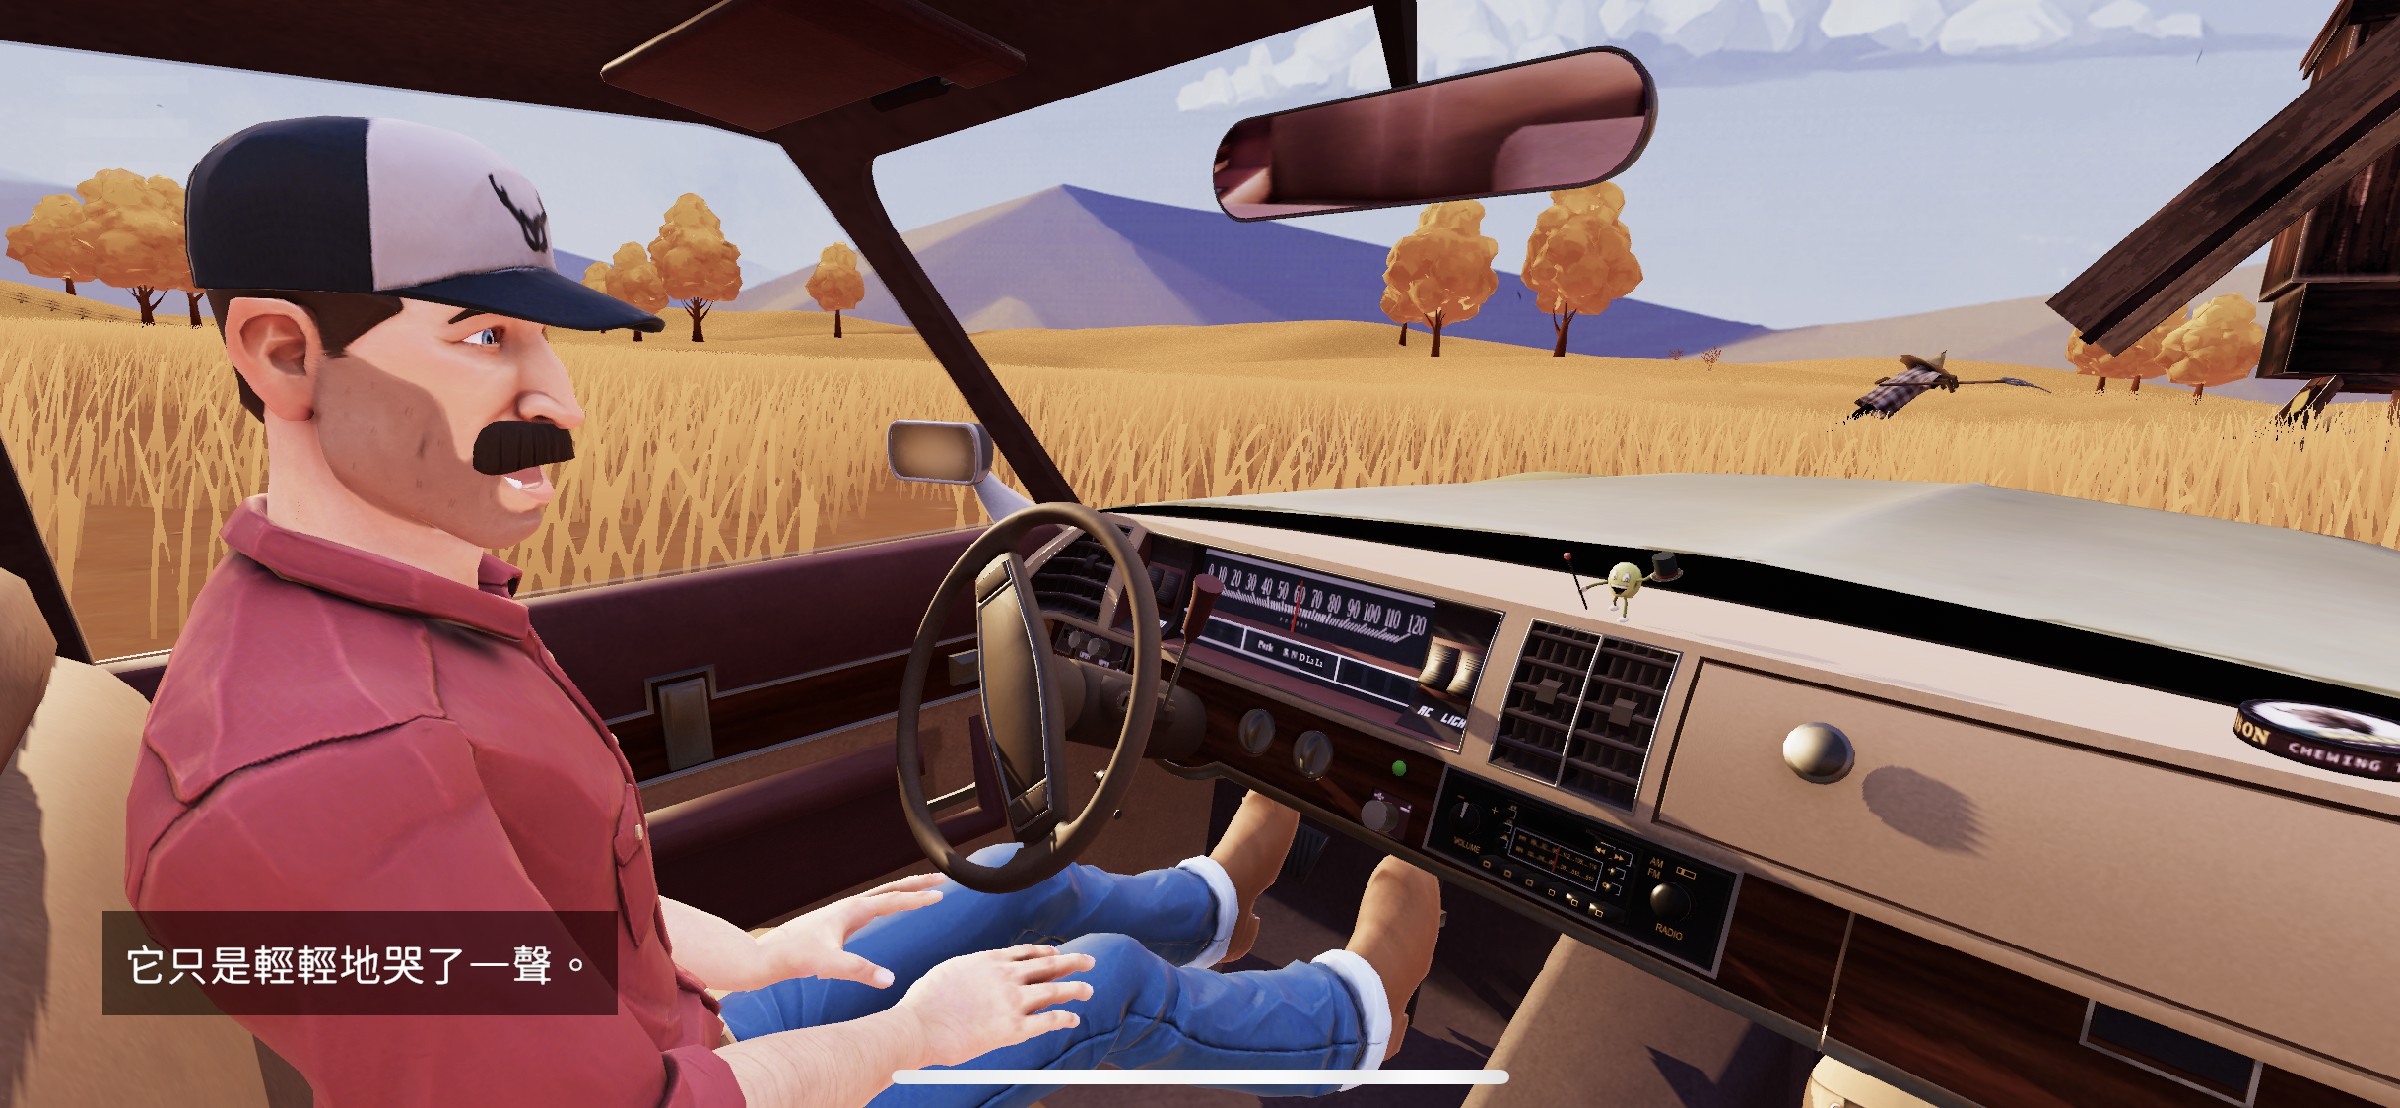 文字冒险游戏《便车旅人》透过一次又一次搭便车探索未知事物与寻找自我